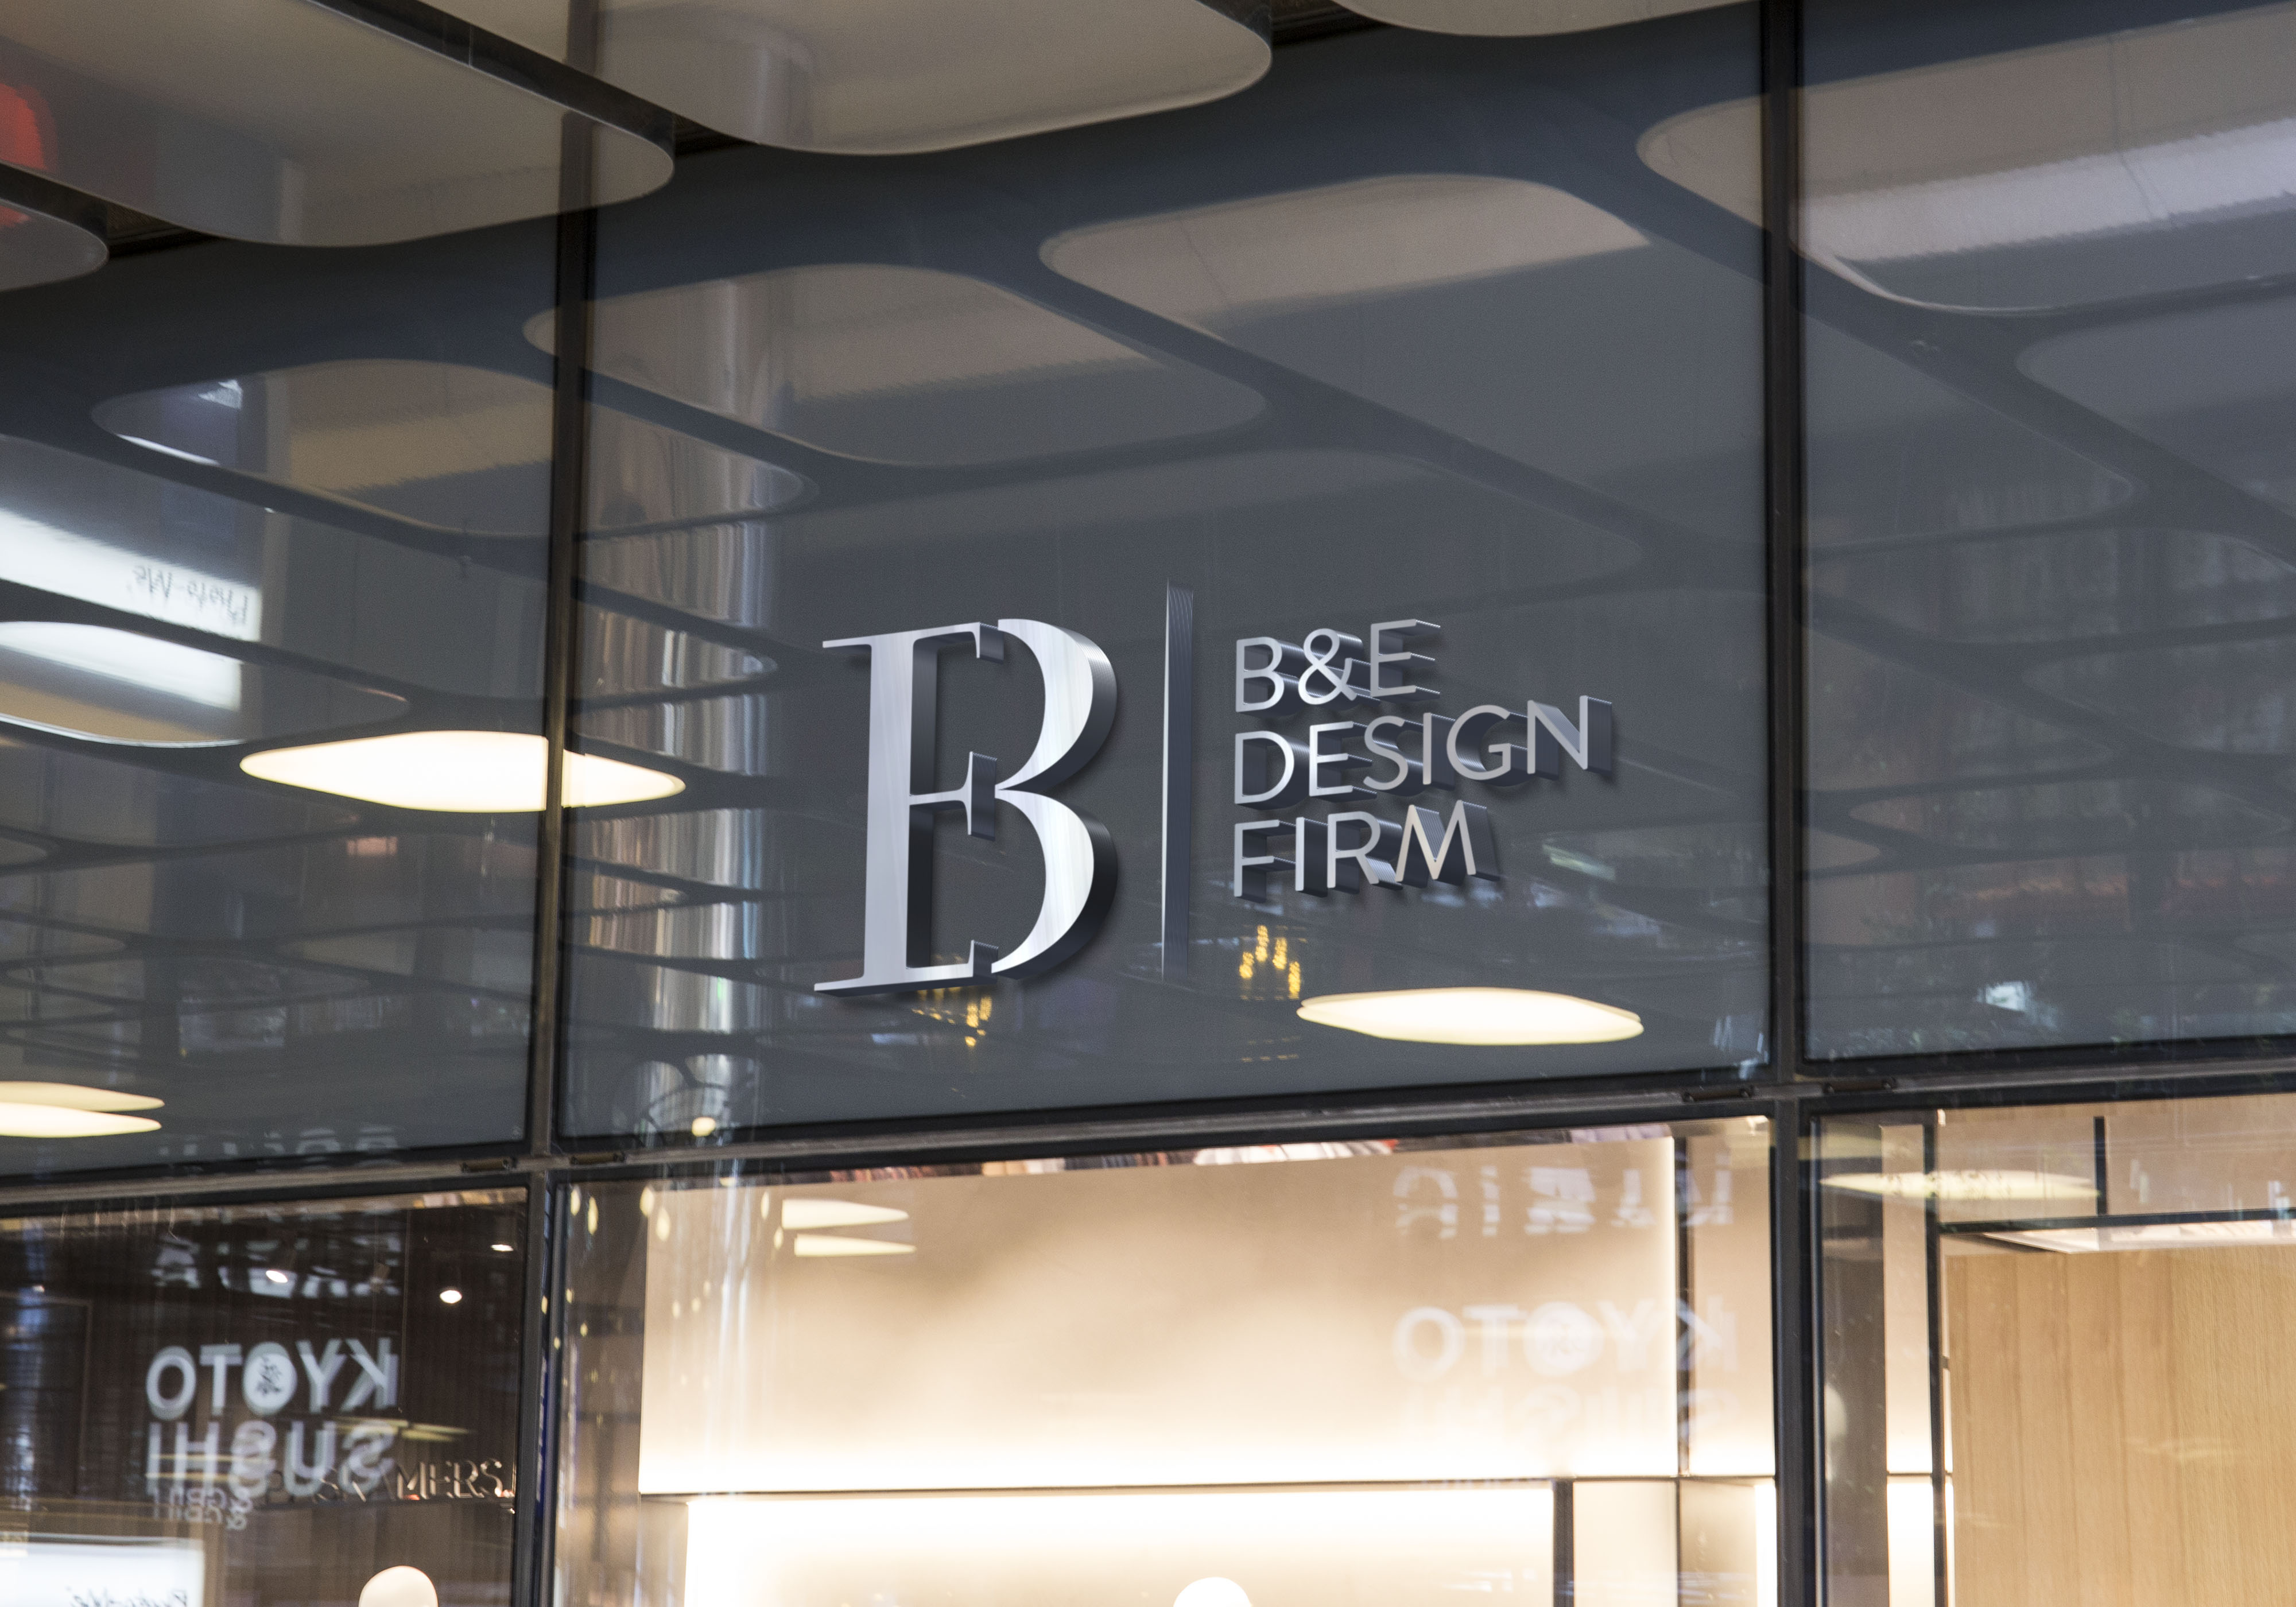 B&E Design Firm